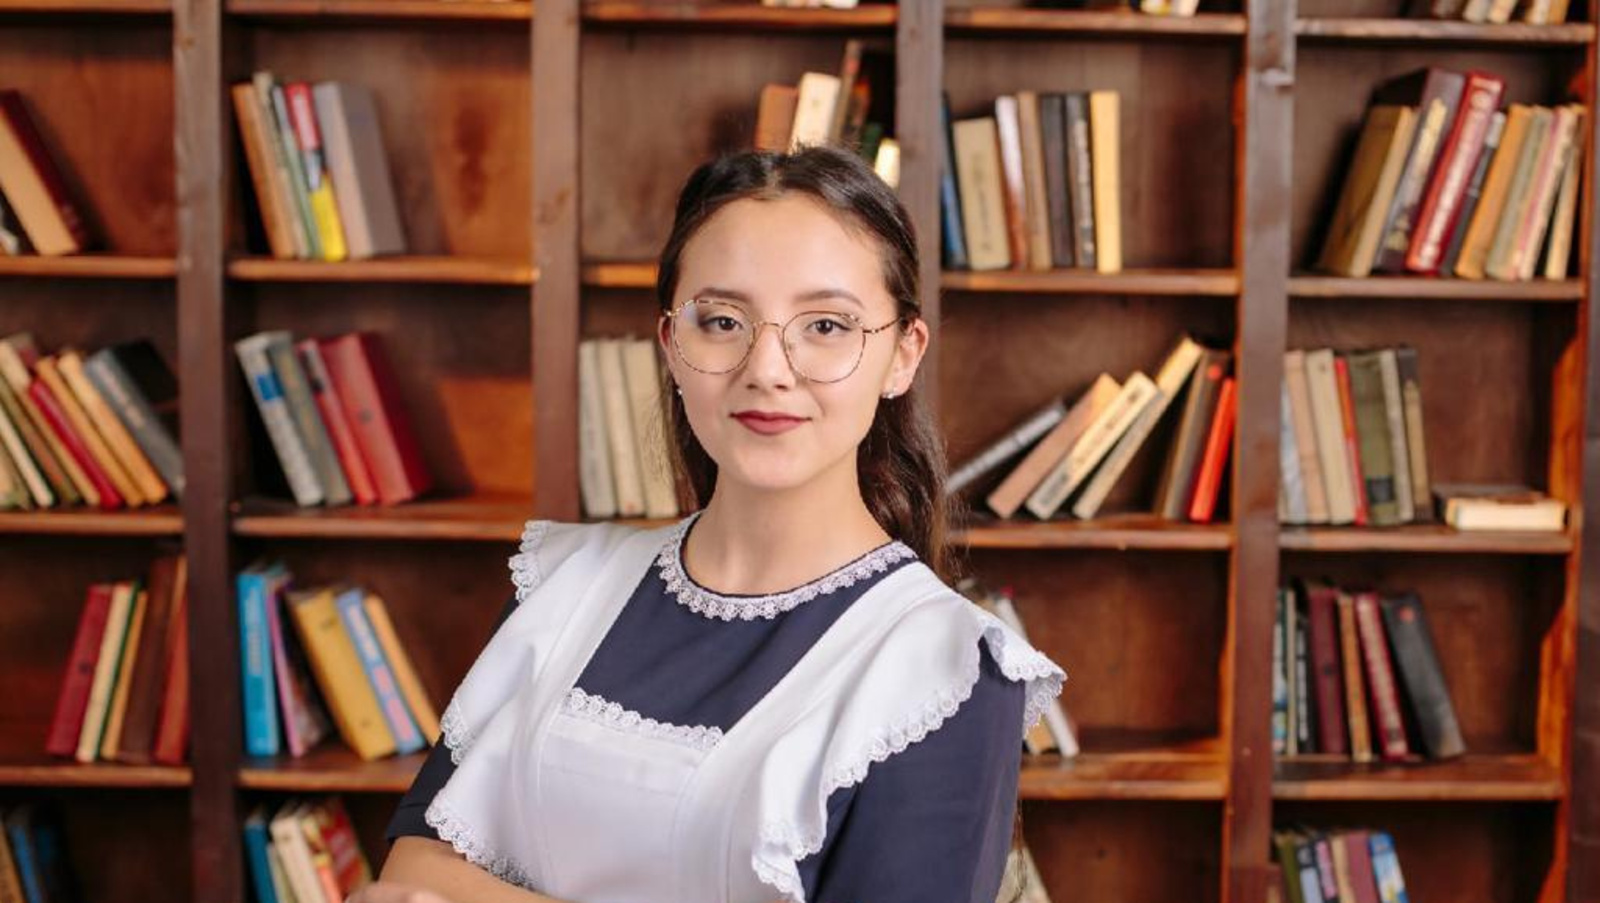 Мультистобалльница из Башкортостана выбрала вуз в родной республике